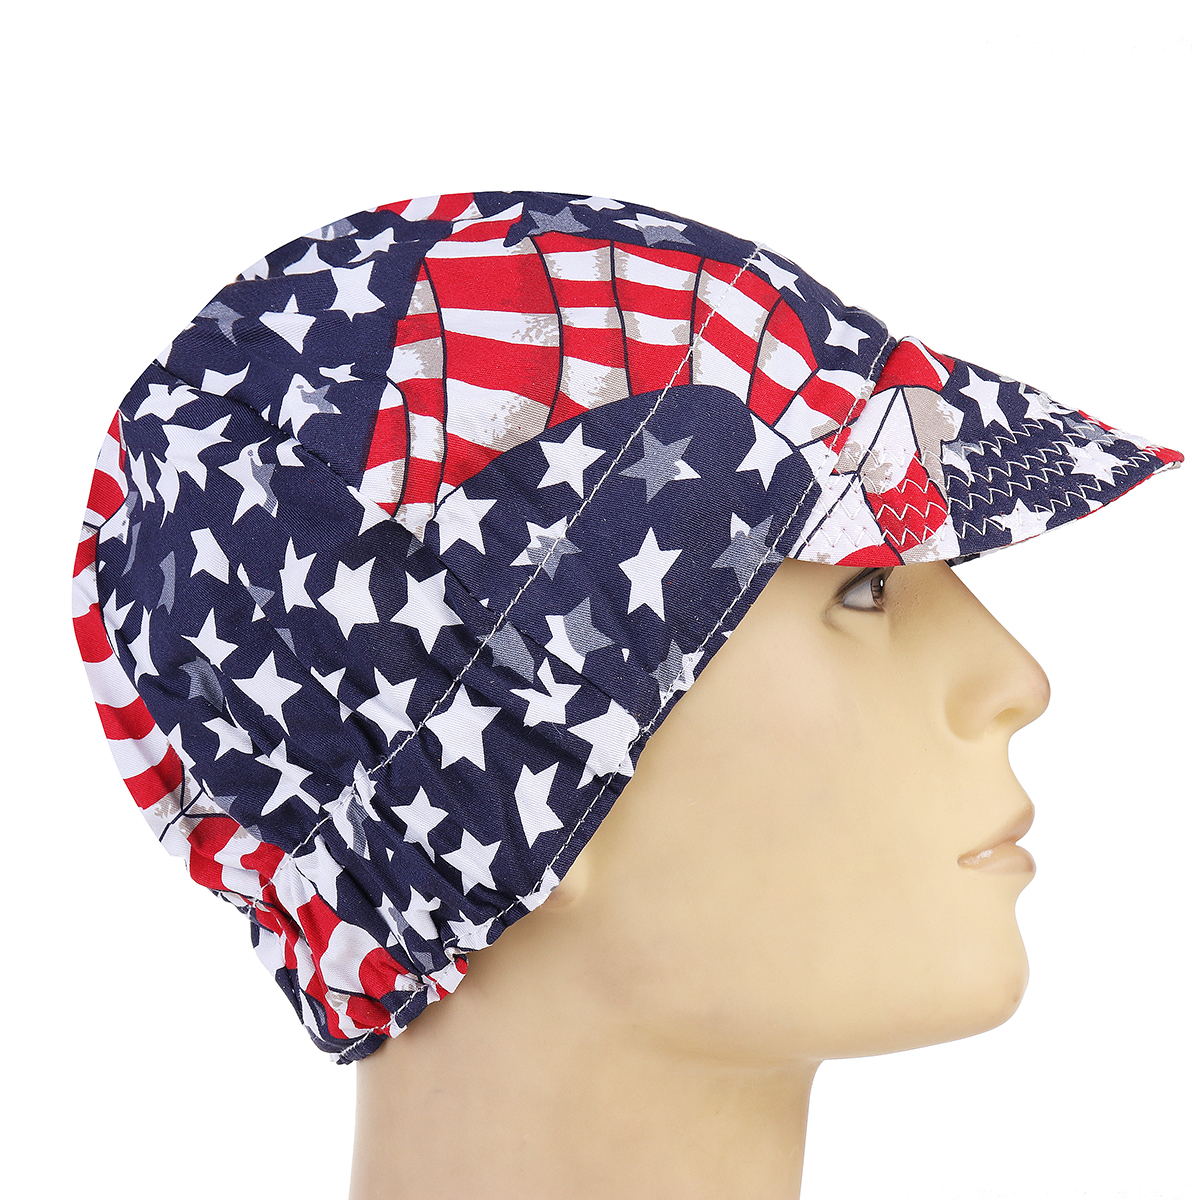 Welding-Cap-Protective-Cotton-Hat-Cap-Welding-Helmet-Hood-Tool-Sweat-Absorption-1321885-3